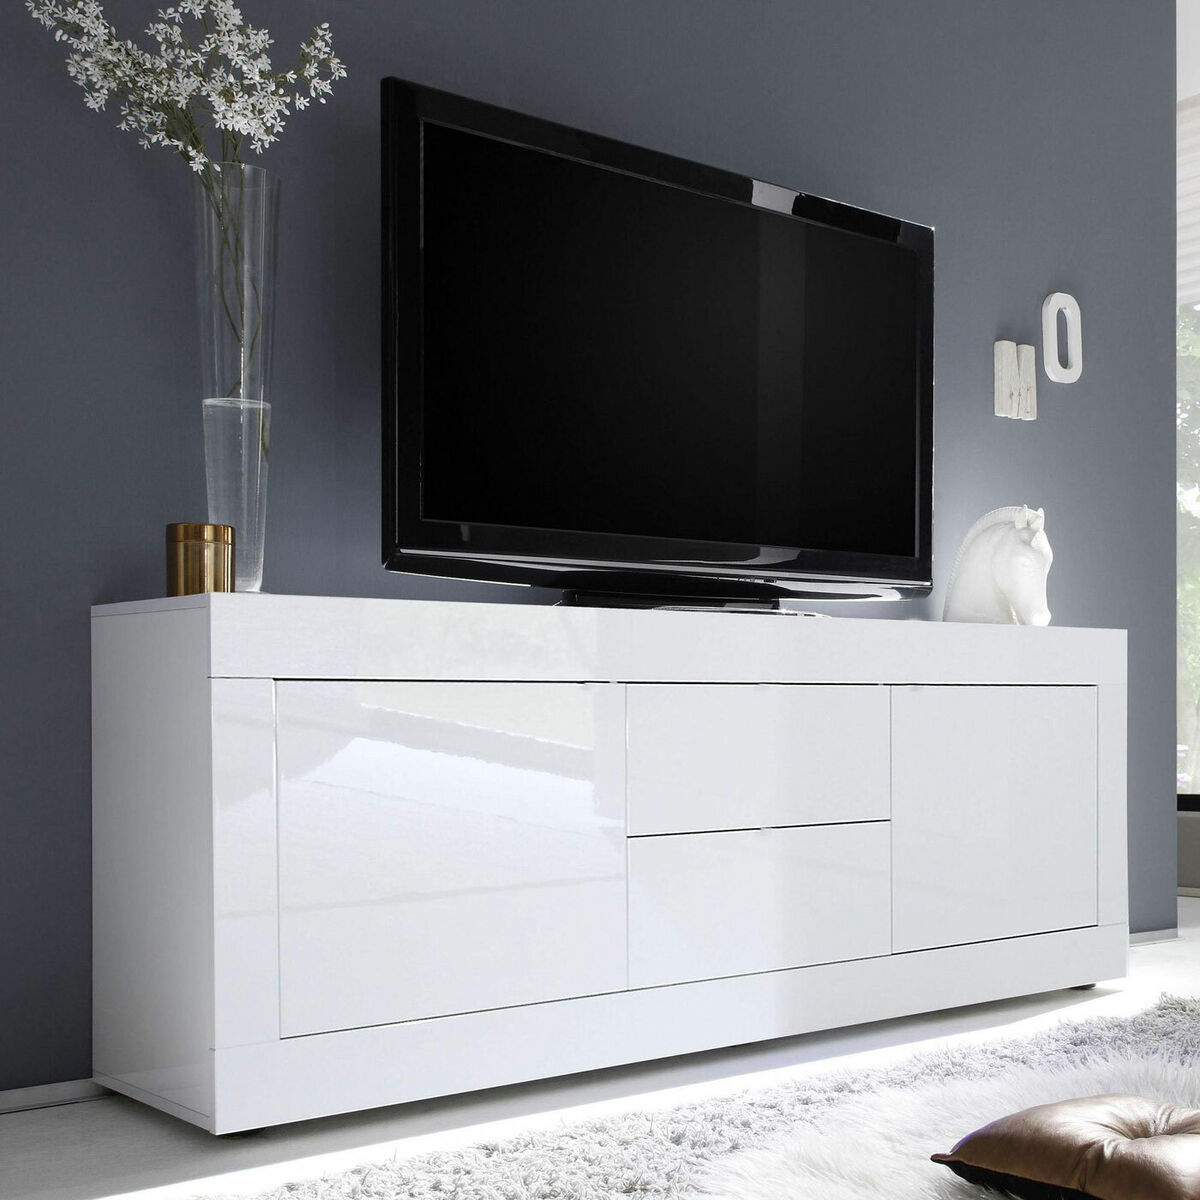 Lowboard TV-Element Kommode Basic weiß Hochglanz lack Schrank Wohnzimmer  210 cm | eBay